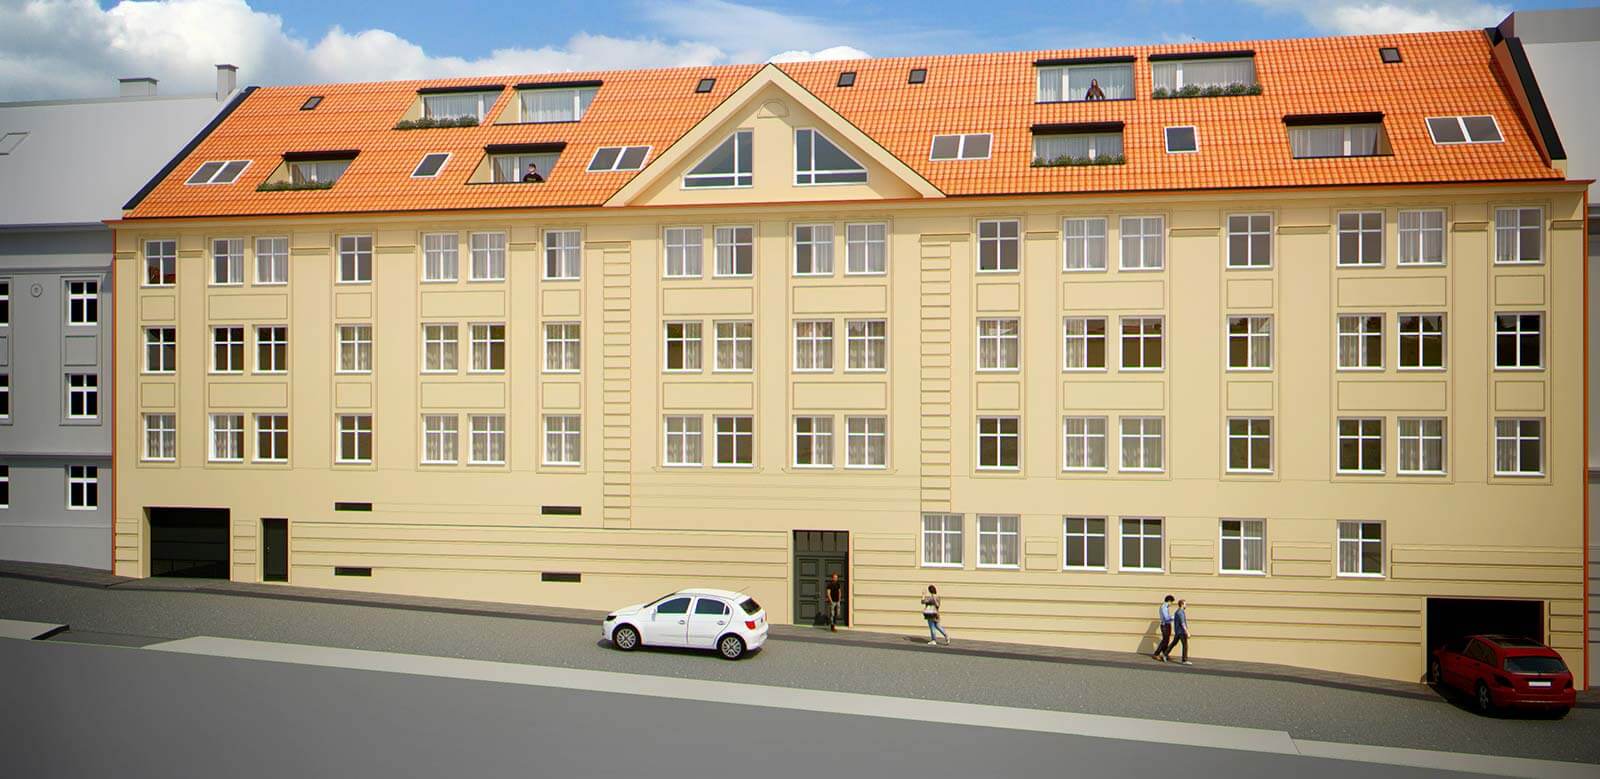 Predané: Novostavba 3 izbový byt, širšie centrum v Bratislave, Beskydská ulica, 75,54m2, balkón 4,5m2, štandard.-4